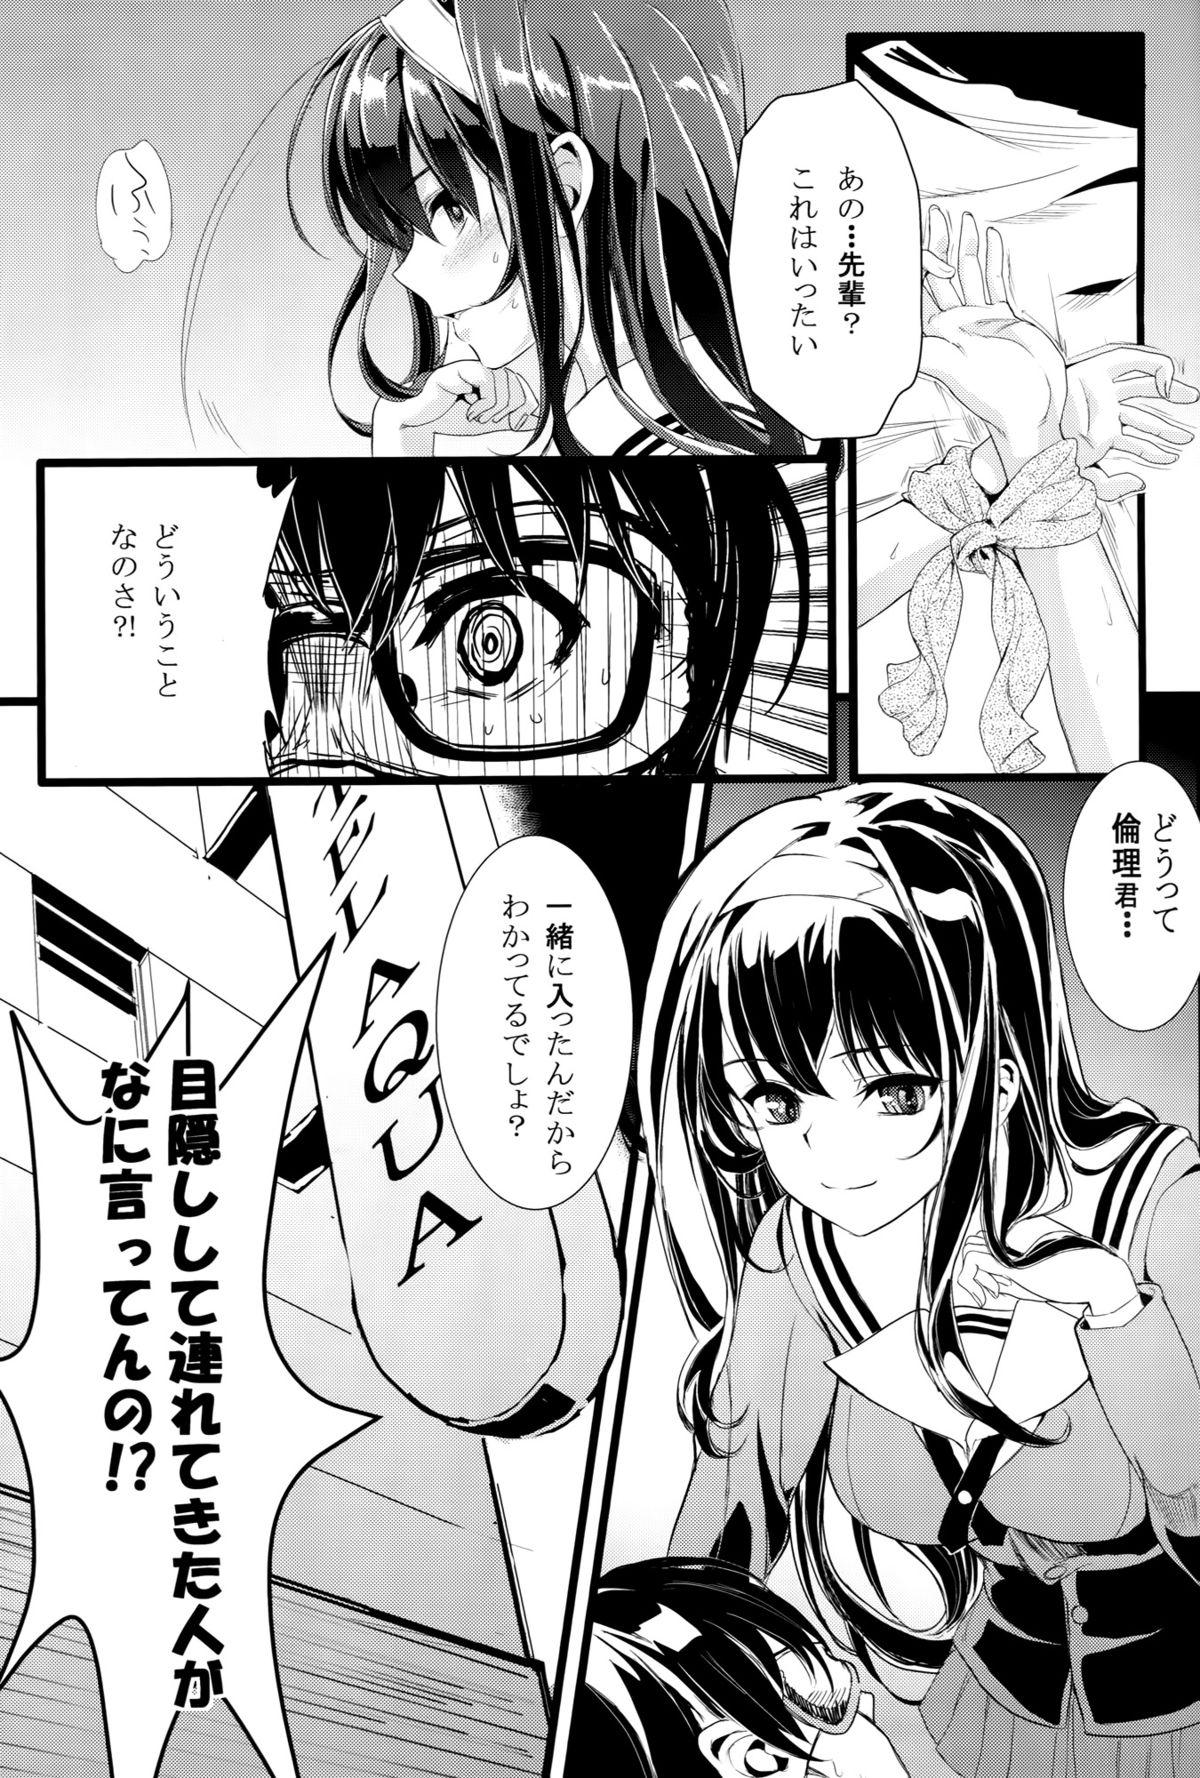 Girlfriends Saenai Futari no Itashikata - Saenai heroine no sodatekata Cream - Page 2